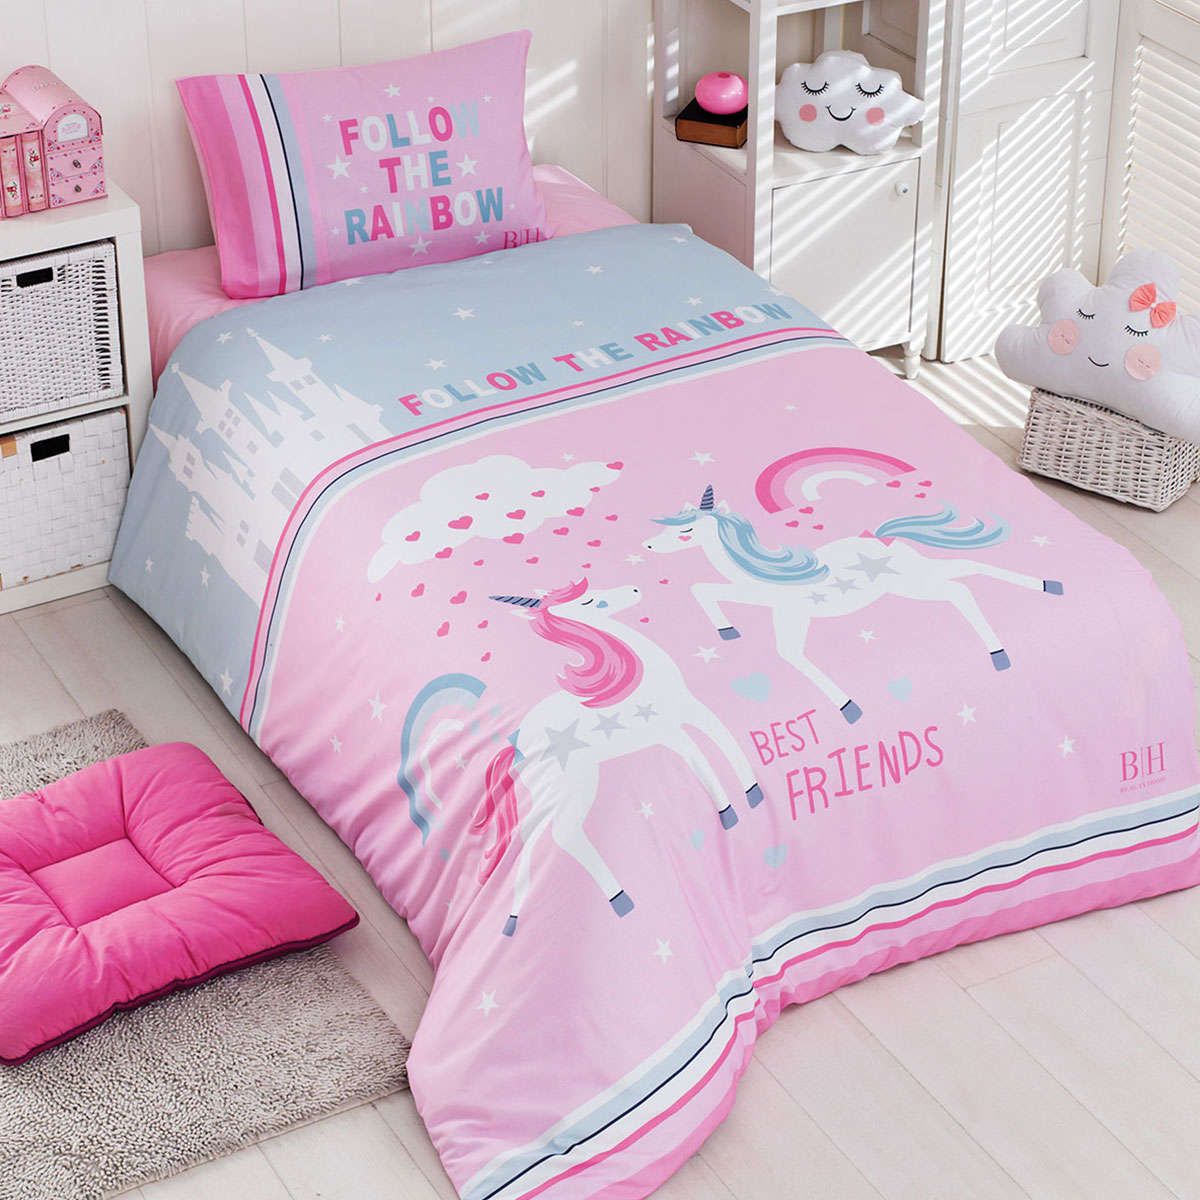 Παιδικό πάπλωμα μονό σετ Rainbow Art 6164 pink-mint beauty home